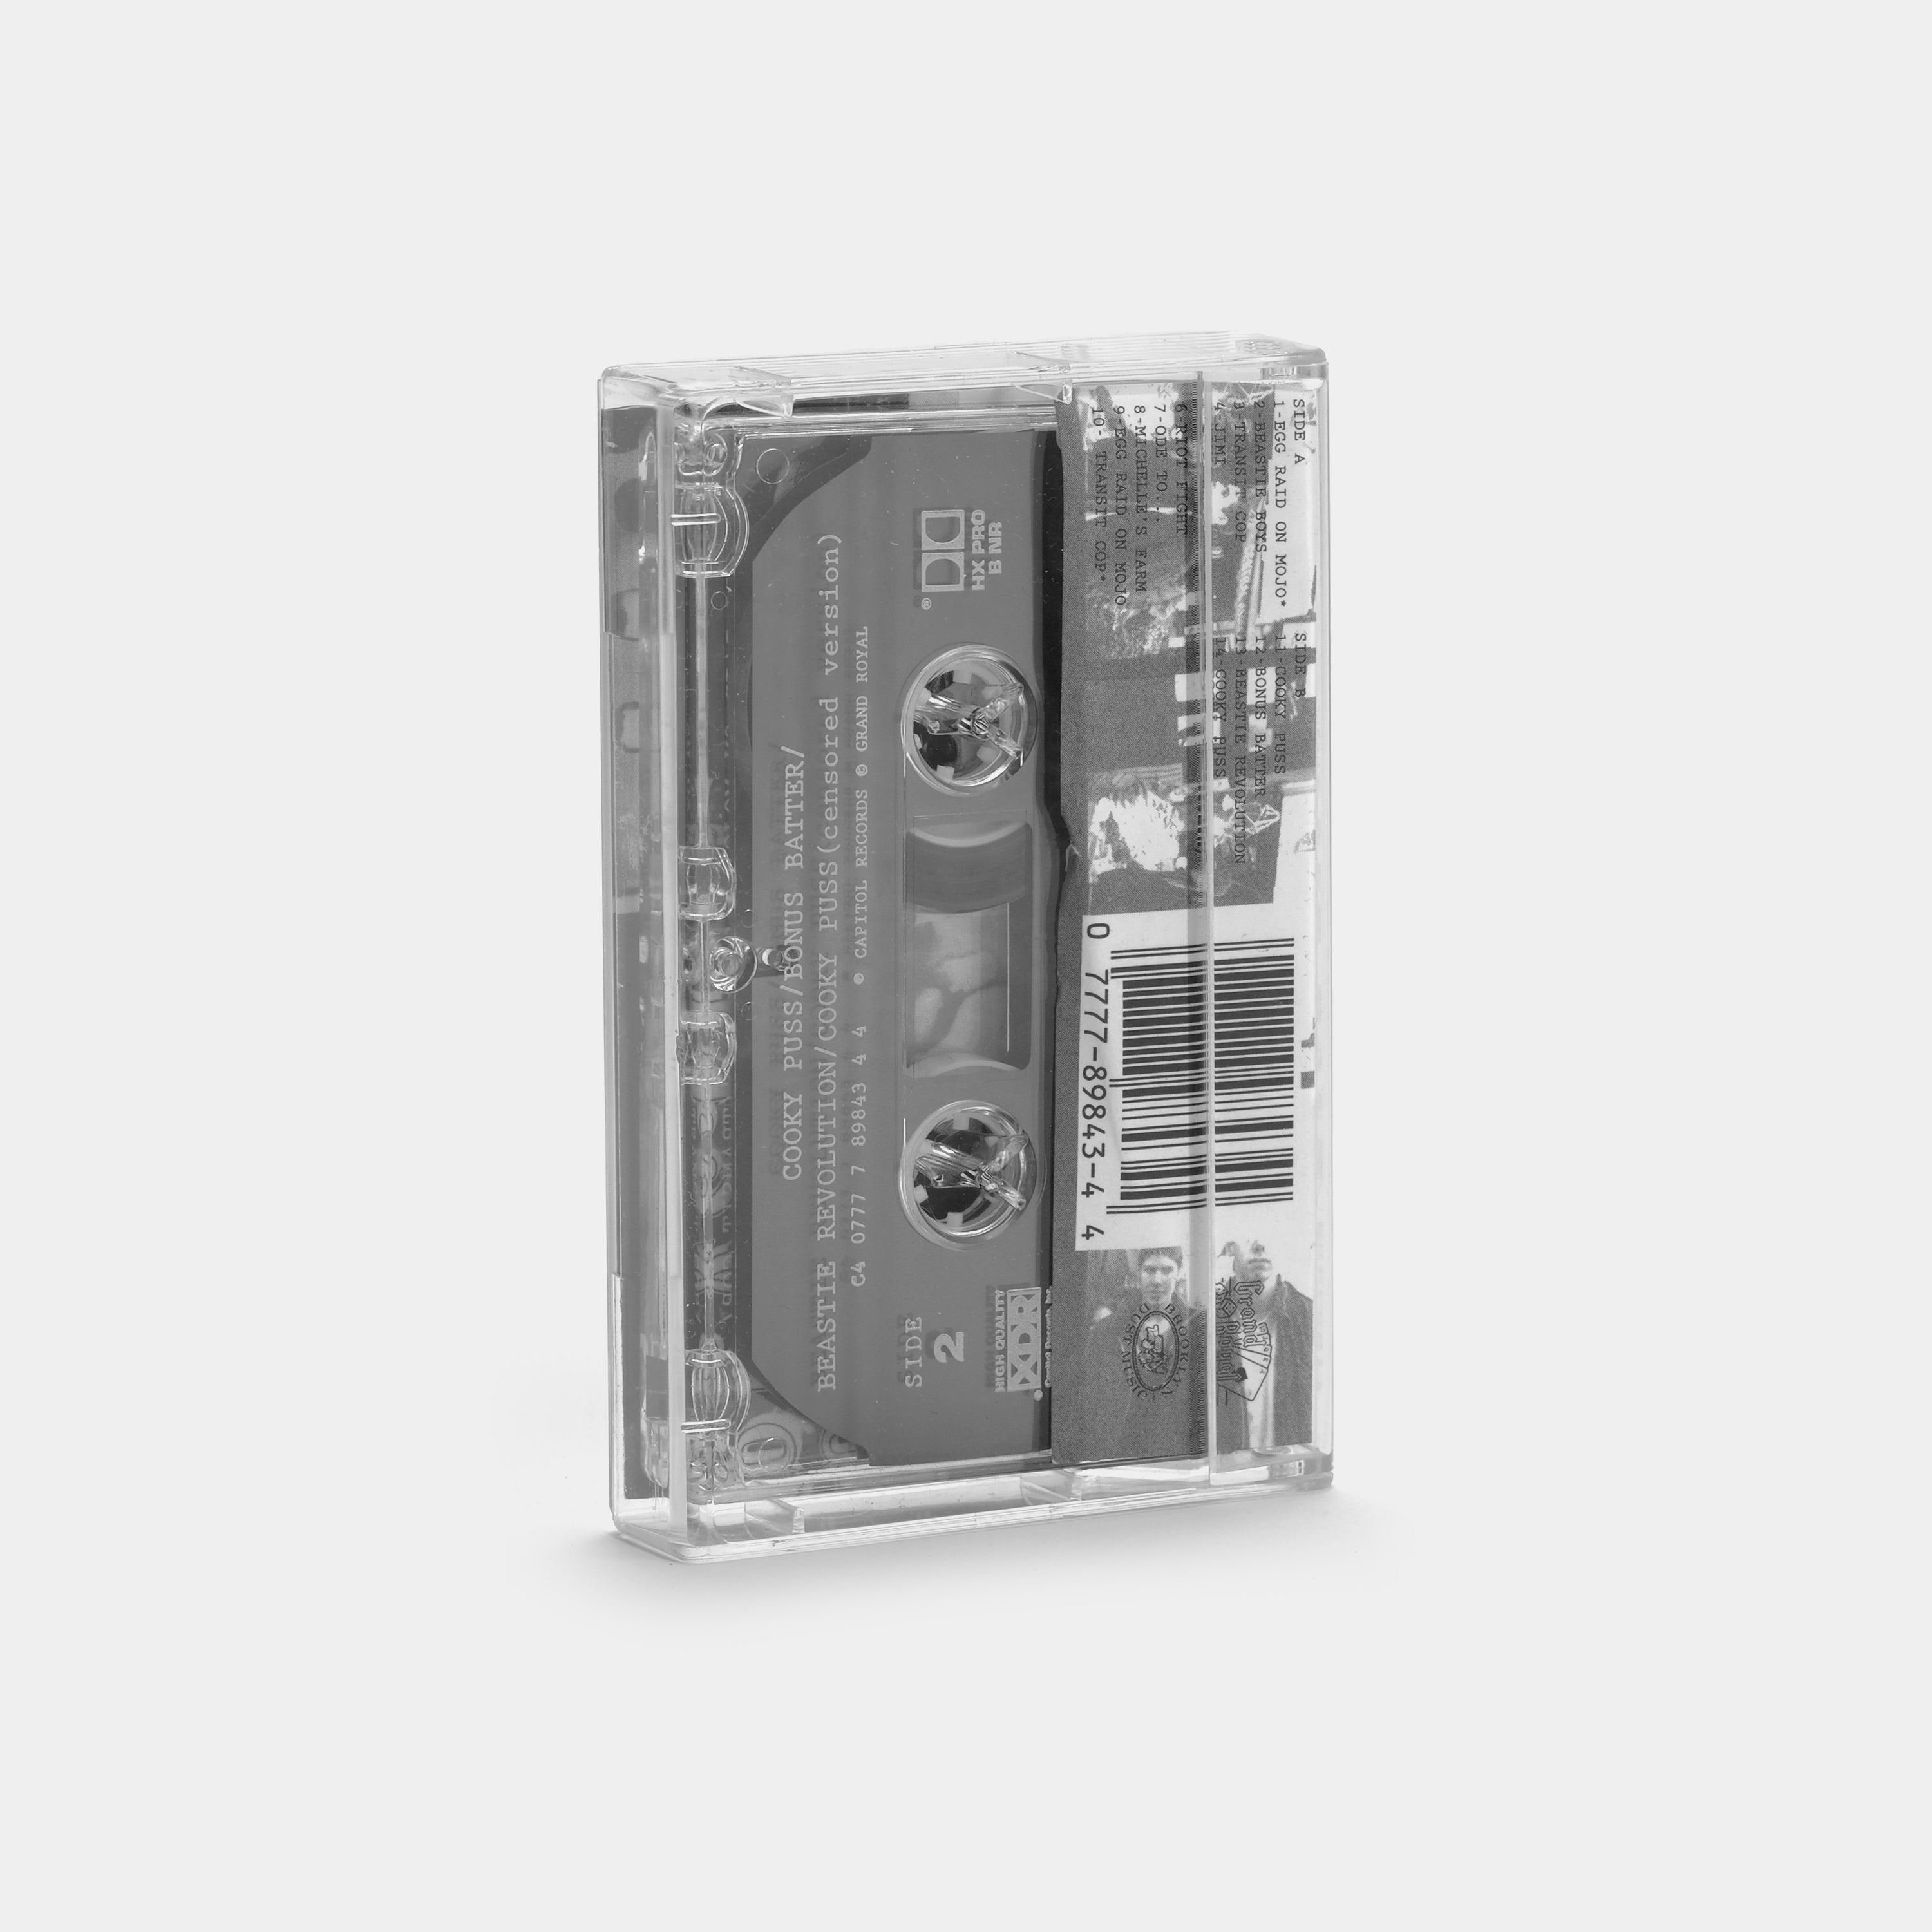 Beastie Boys - Some Old Bullshit Cassette Tape